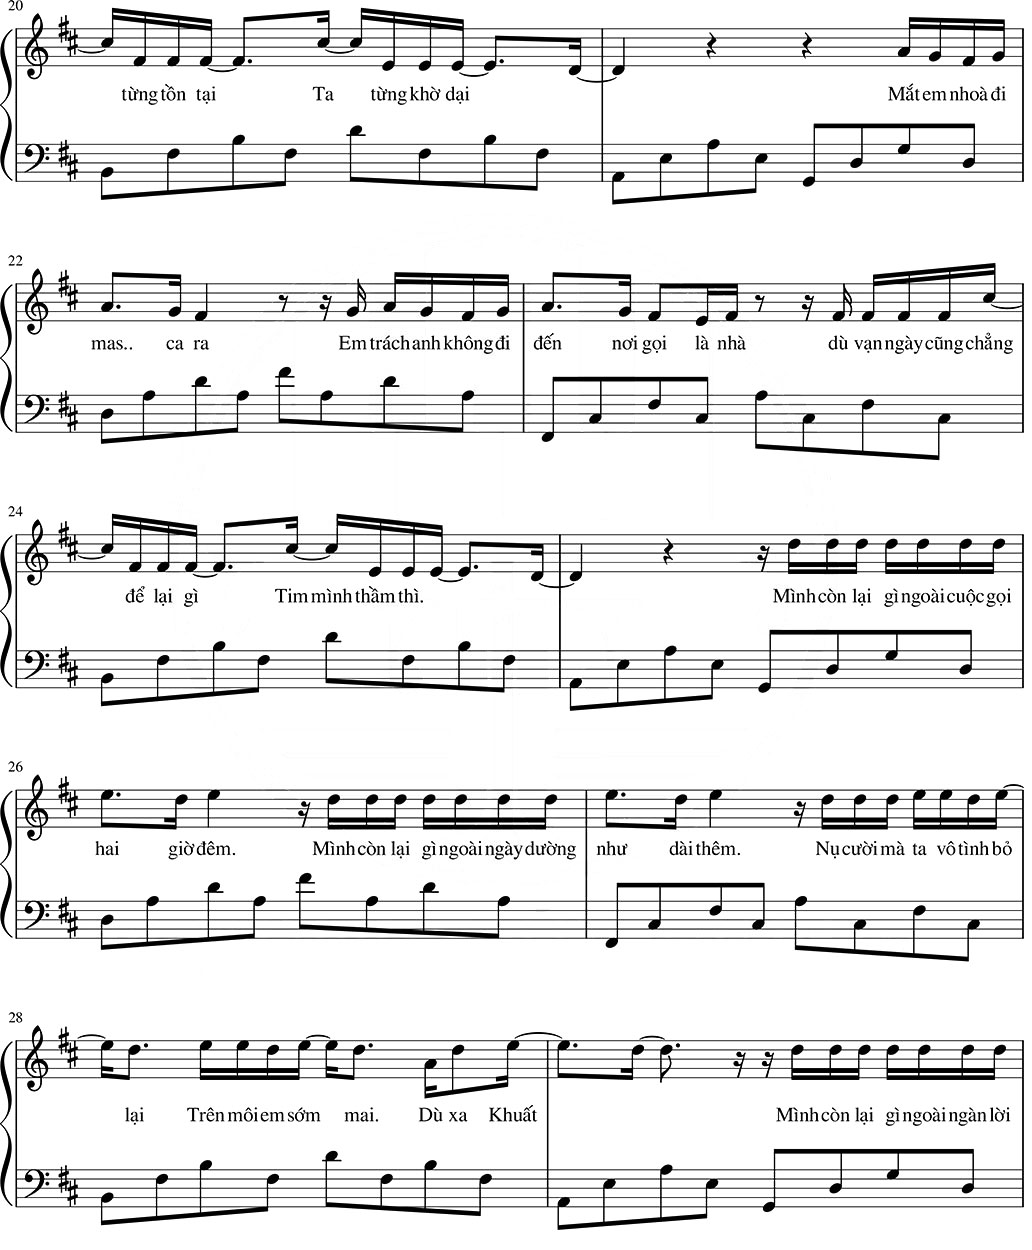 mascara-sheet-piano-1-piano-fingers